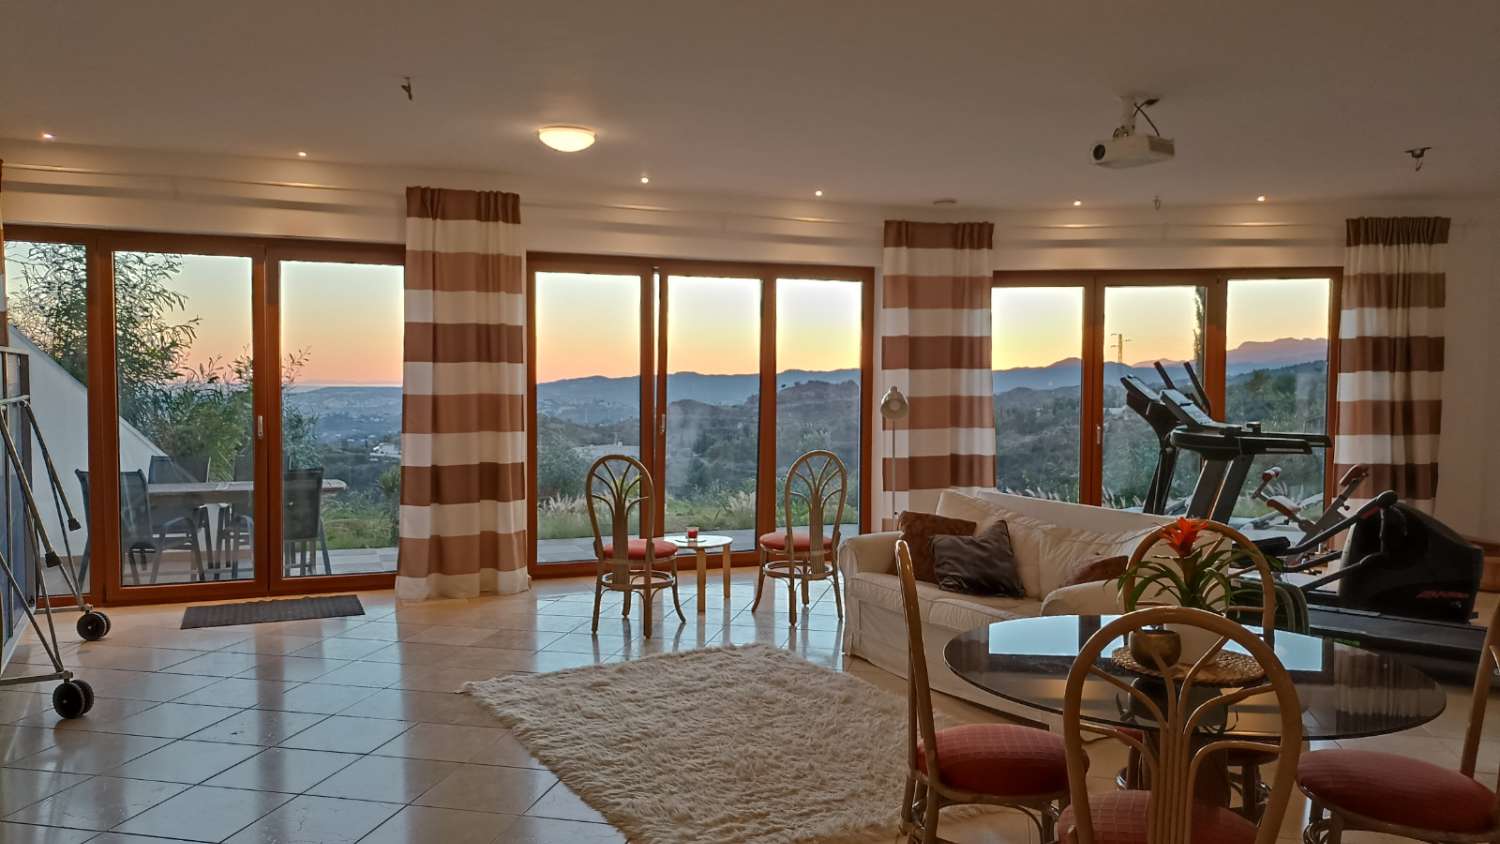 SPEKTAKULÄRE Villa zum Verkauf in der Urbanisation Mijas mit Panoramablick